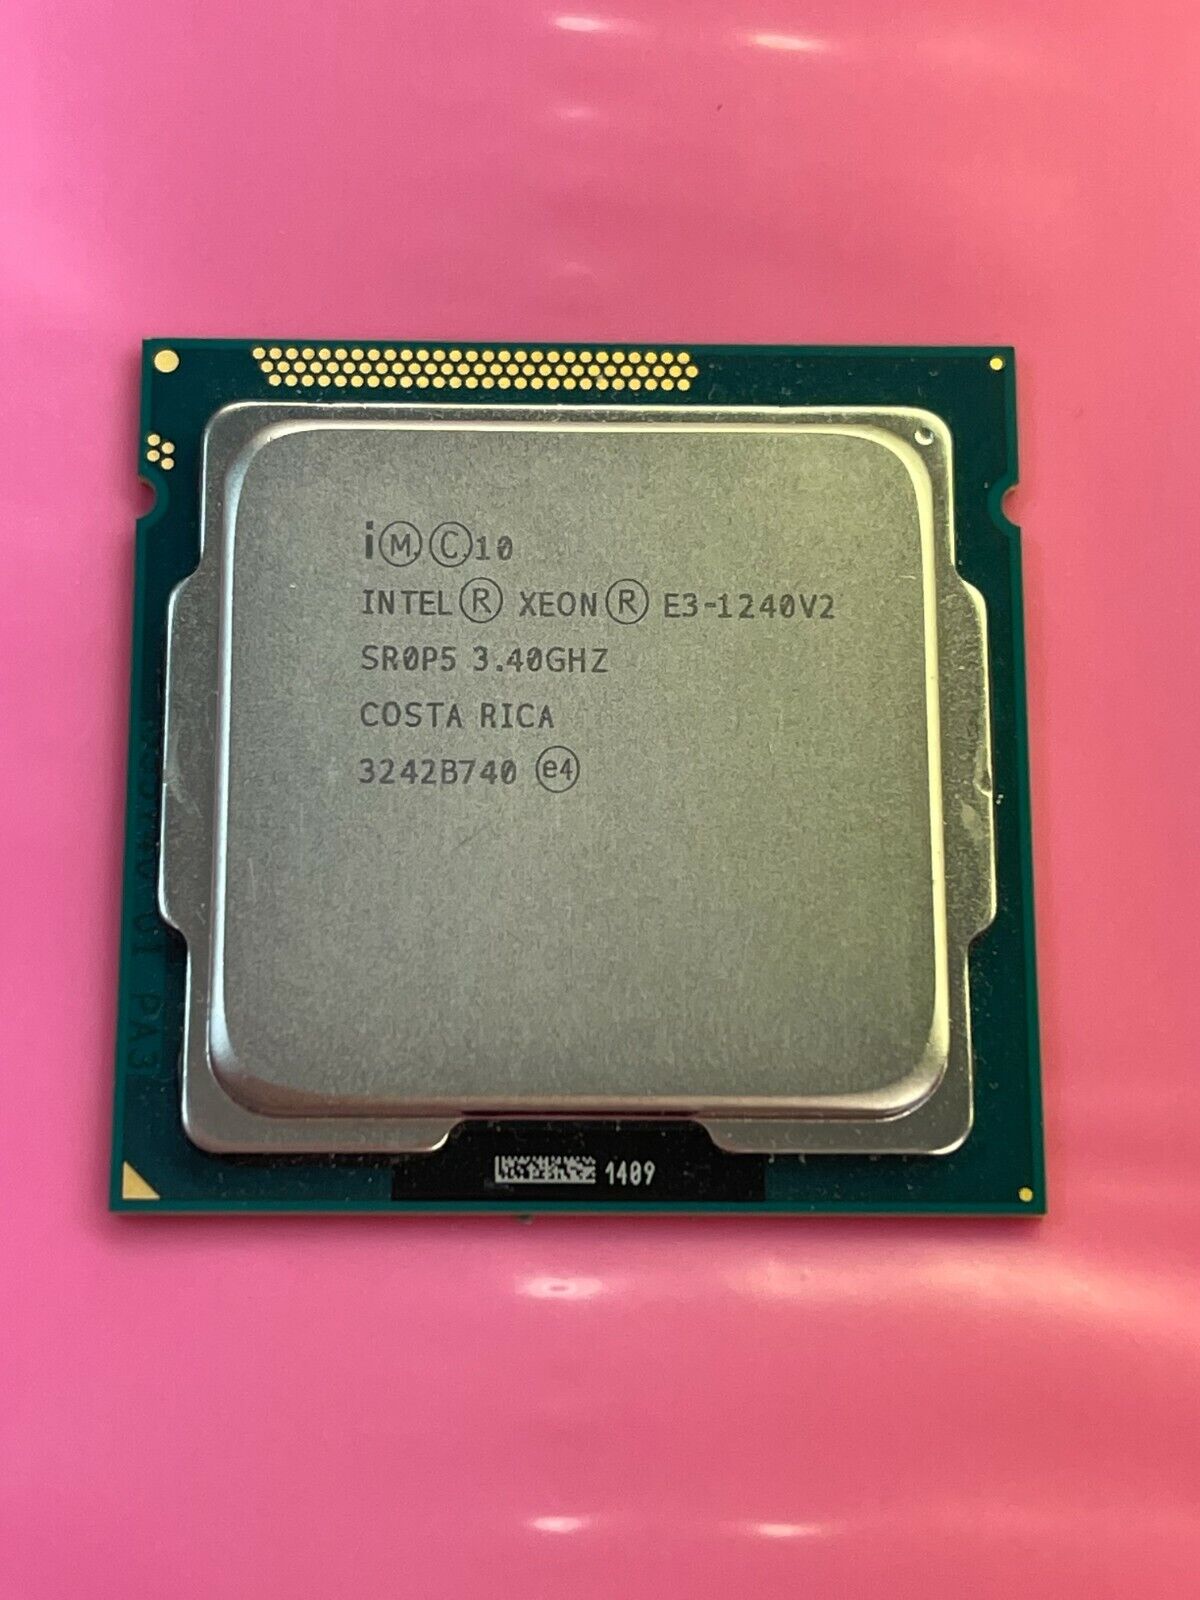 Intel Xeon E3-1240 v2 SR0P5 3.4GHz Quad Core LGA 1155 CPU Processor